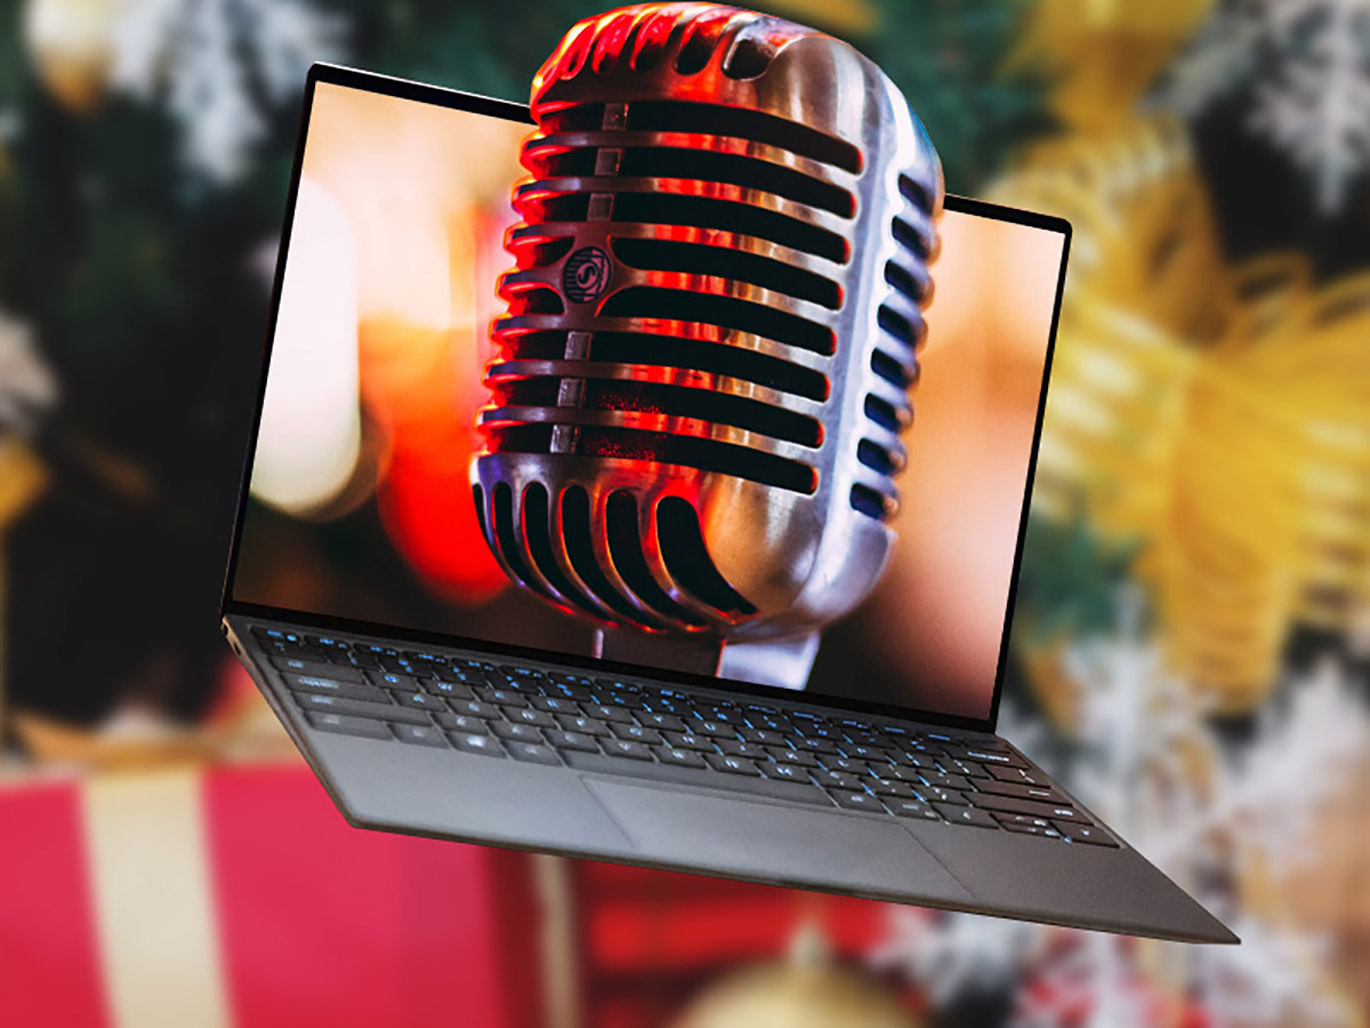 Mikrofon vor einem Laptop und Weihnachtsbaum